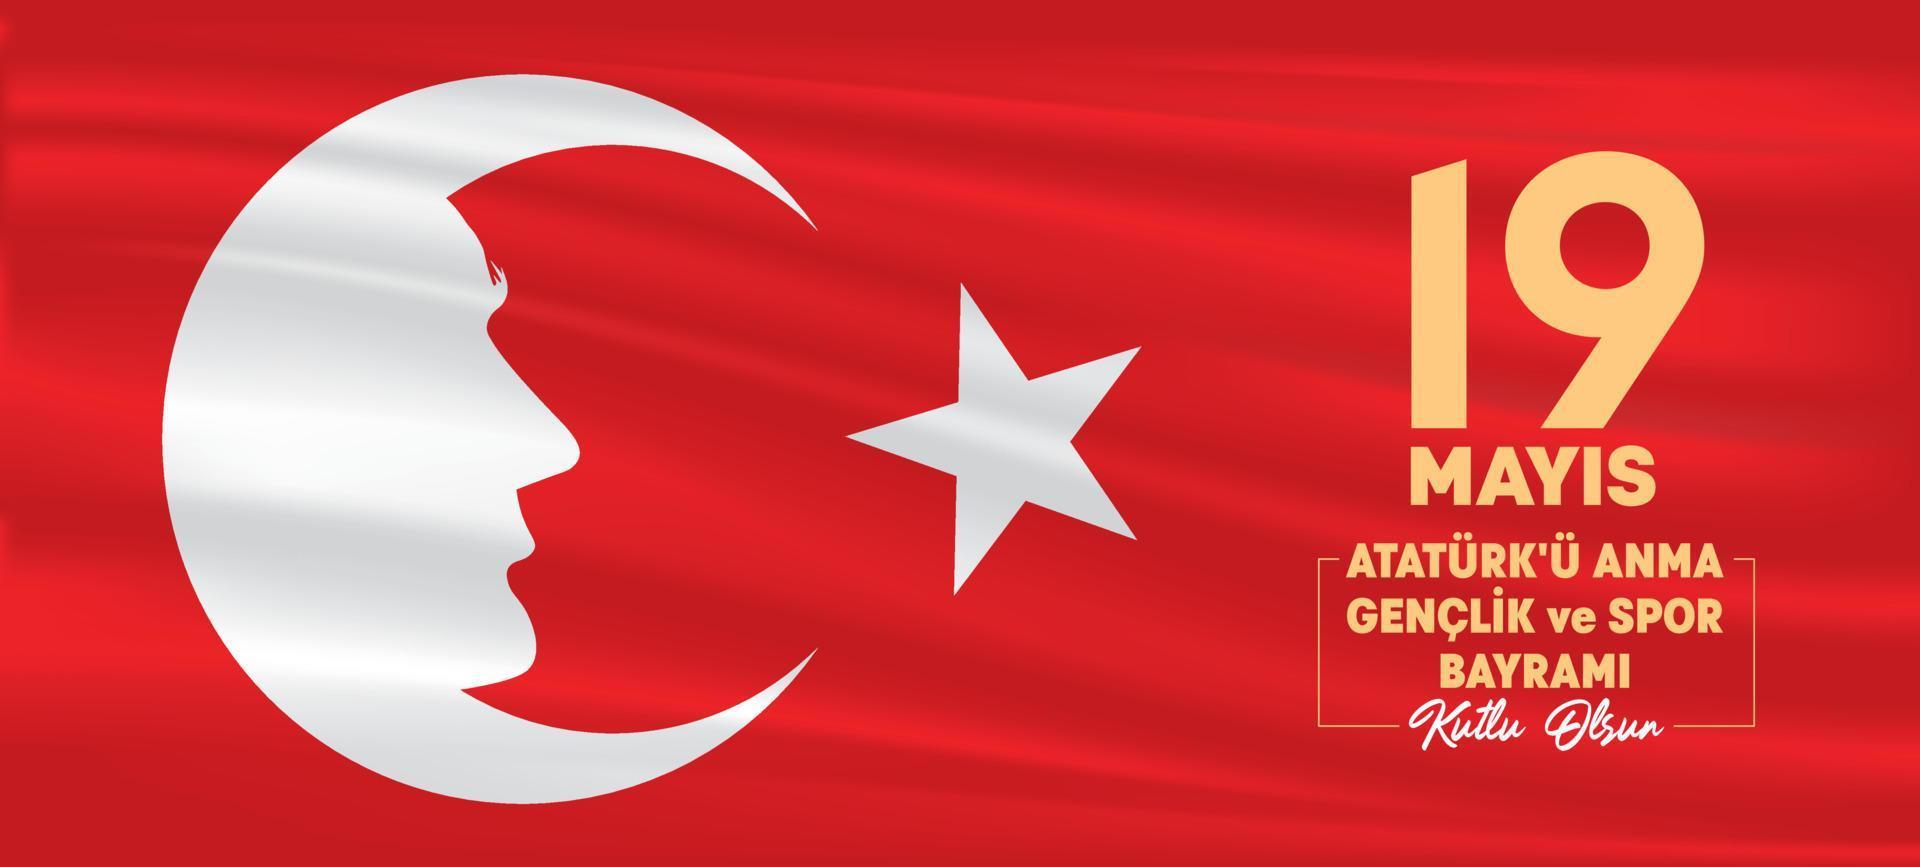 Vektorzeichnung der türkischen Flagge und Atatürk. 19. mai 1919 fröhliches atatürk-gedenken, jugend- und sporttag, botschaft. Jugendurlaub. Banner-Design. vektor